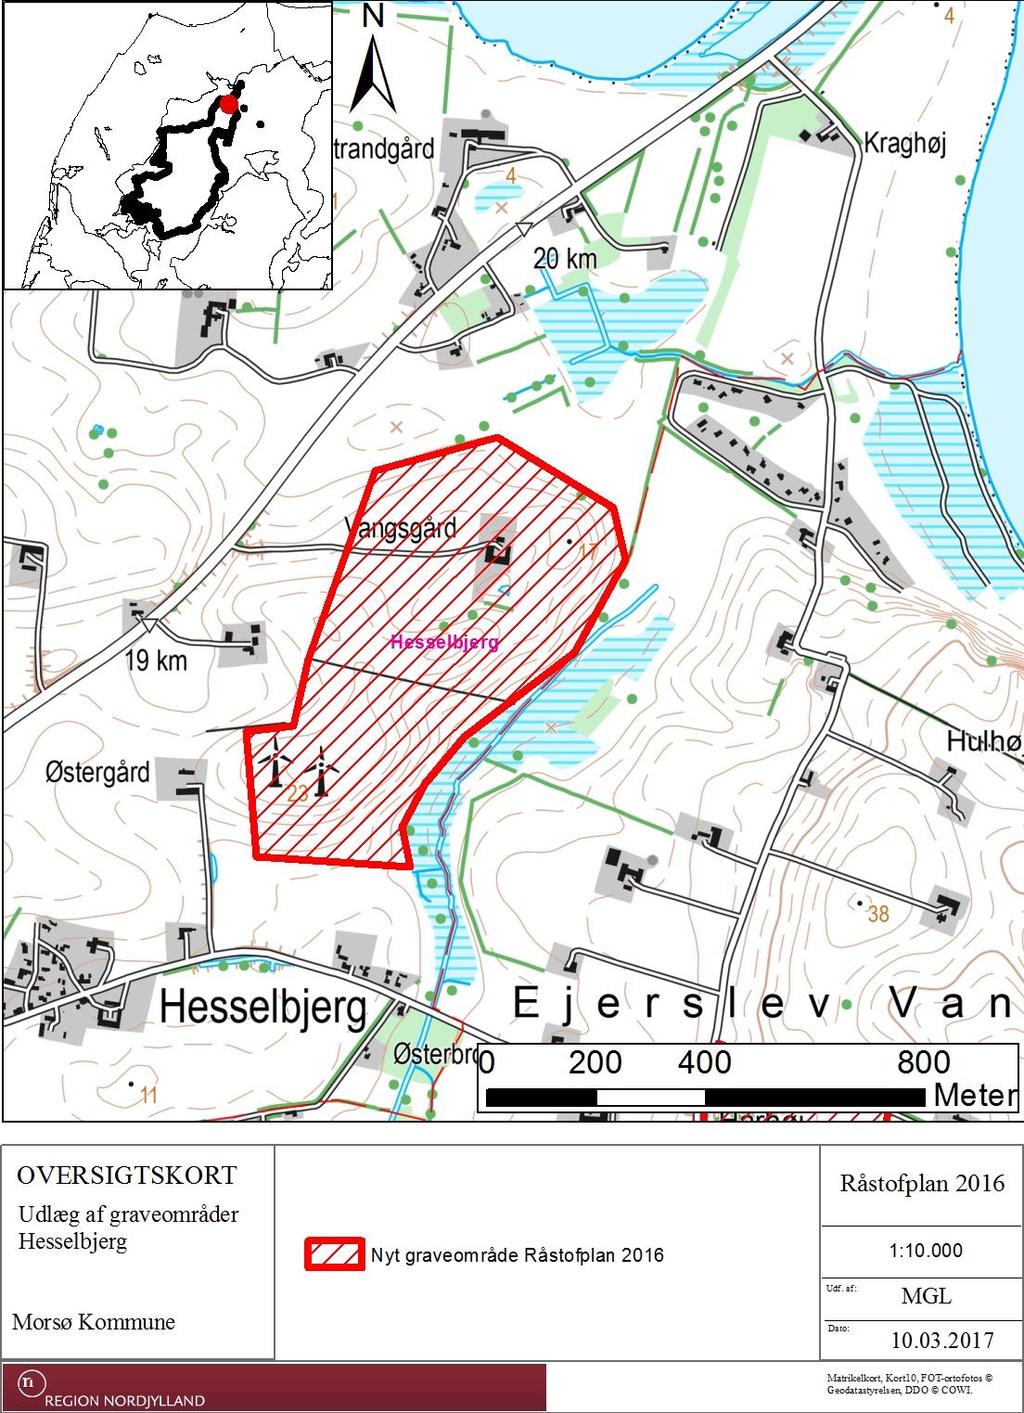 5.3.5 Hesselbjerg, Morsø Kommune Det forslåede moler graveområde Hesselbjerg i Morsø Kommune dækker i alt ca. 30 ha. Området ligger i det åbne landbrugsland nord for Hesselbjerg.